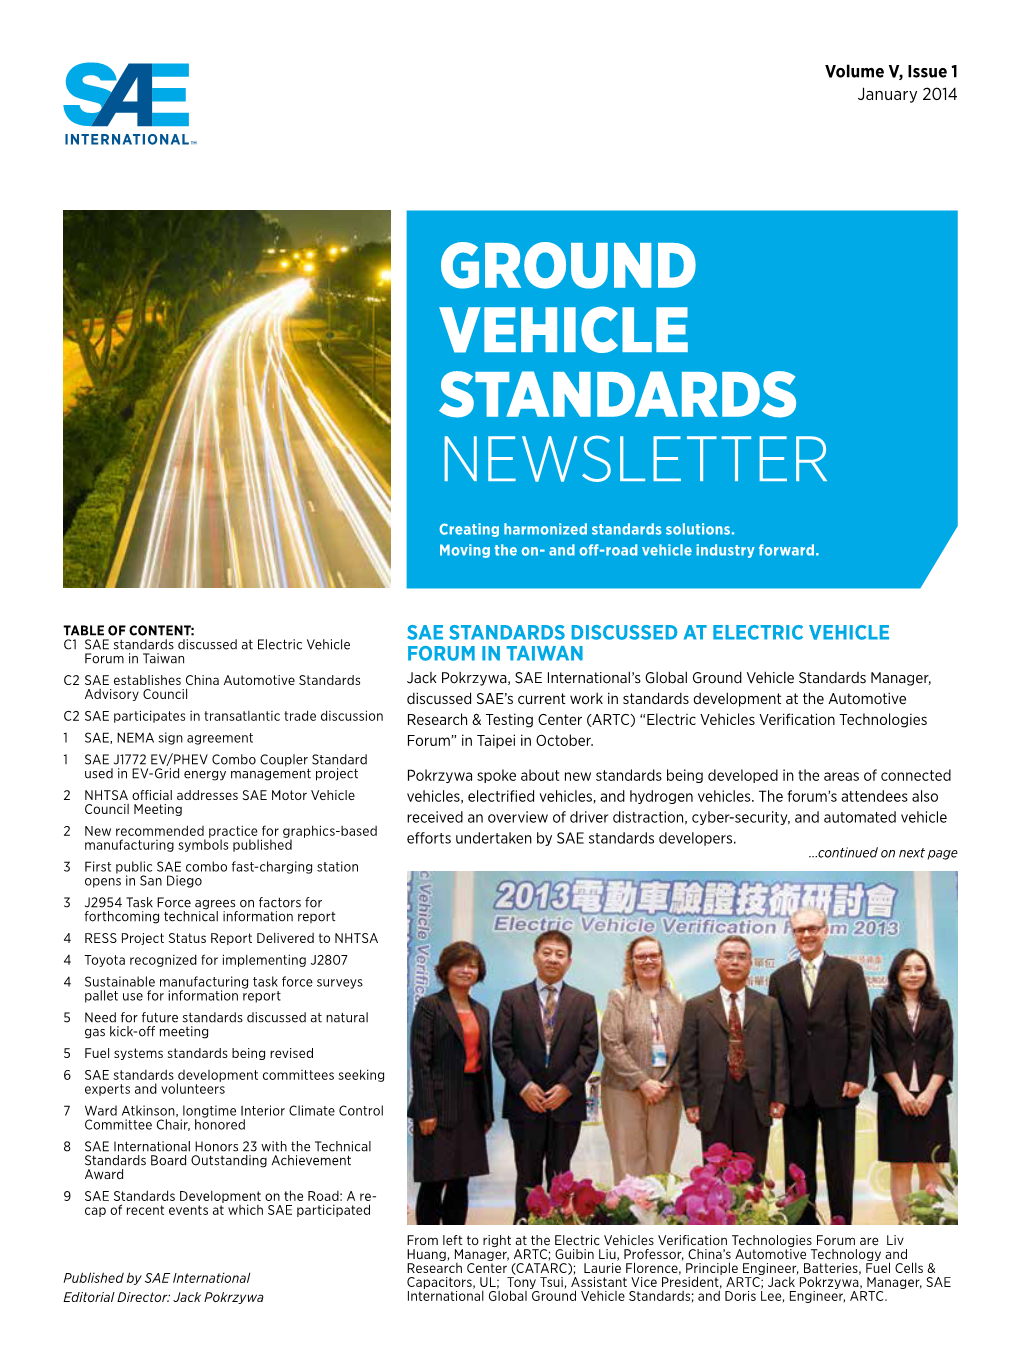 Ground Vehicle Standards Newsletter